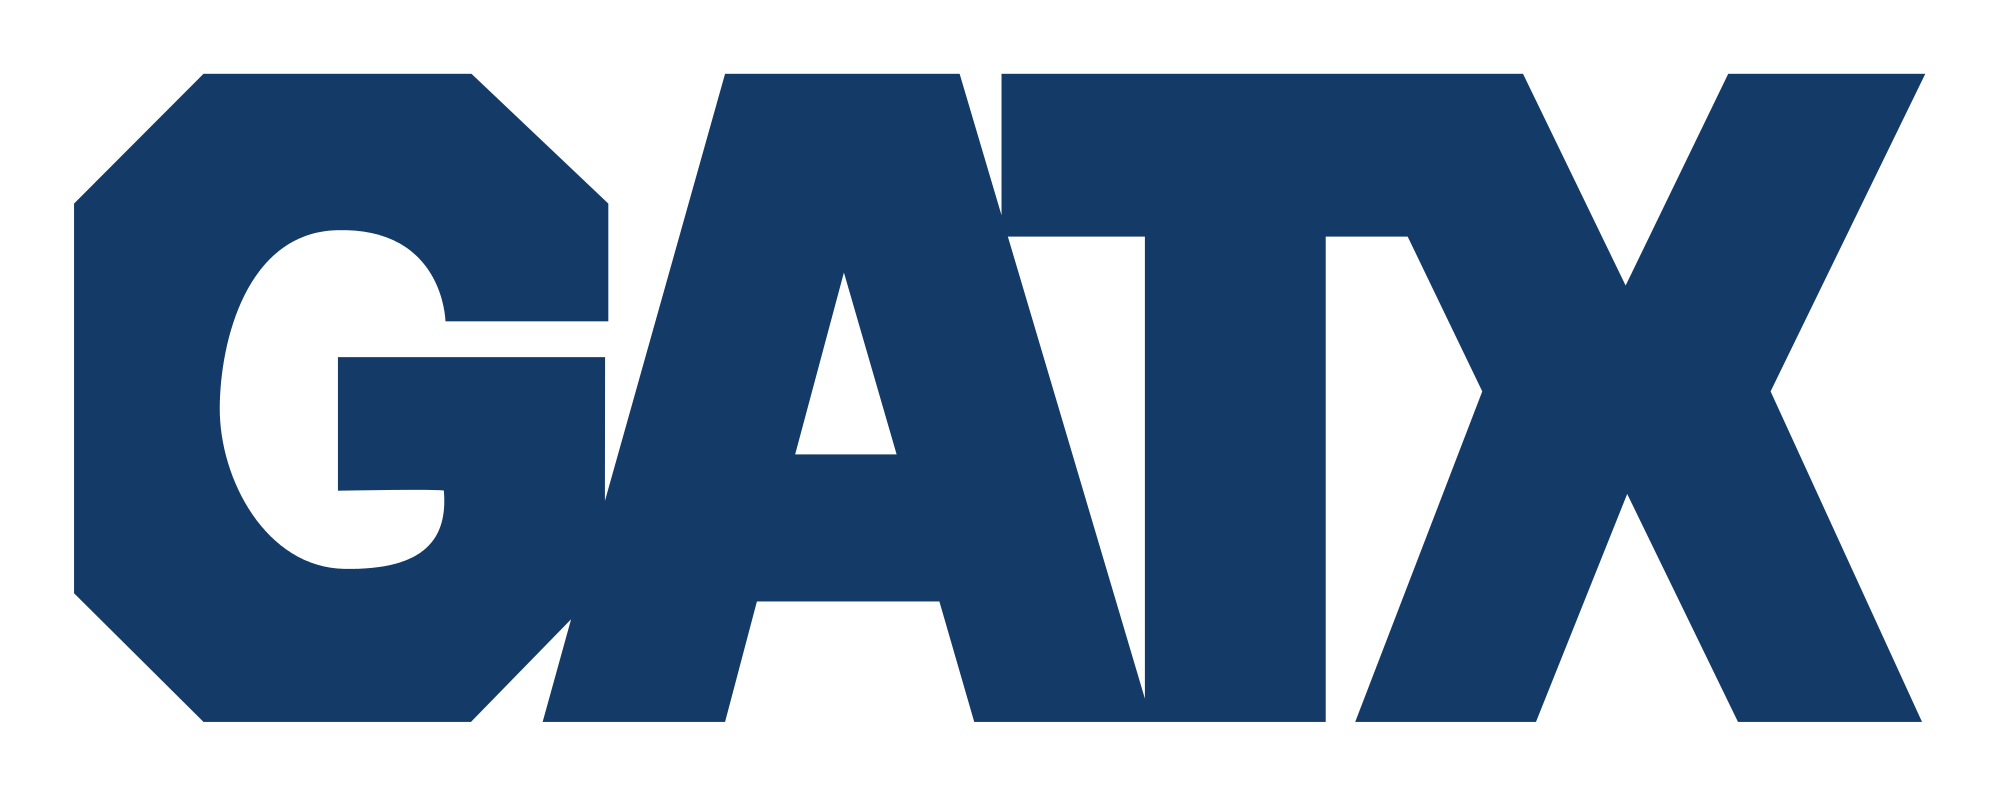 GATX Corporation Company Logo